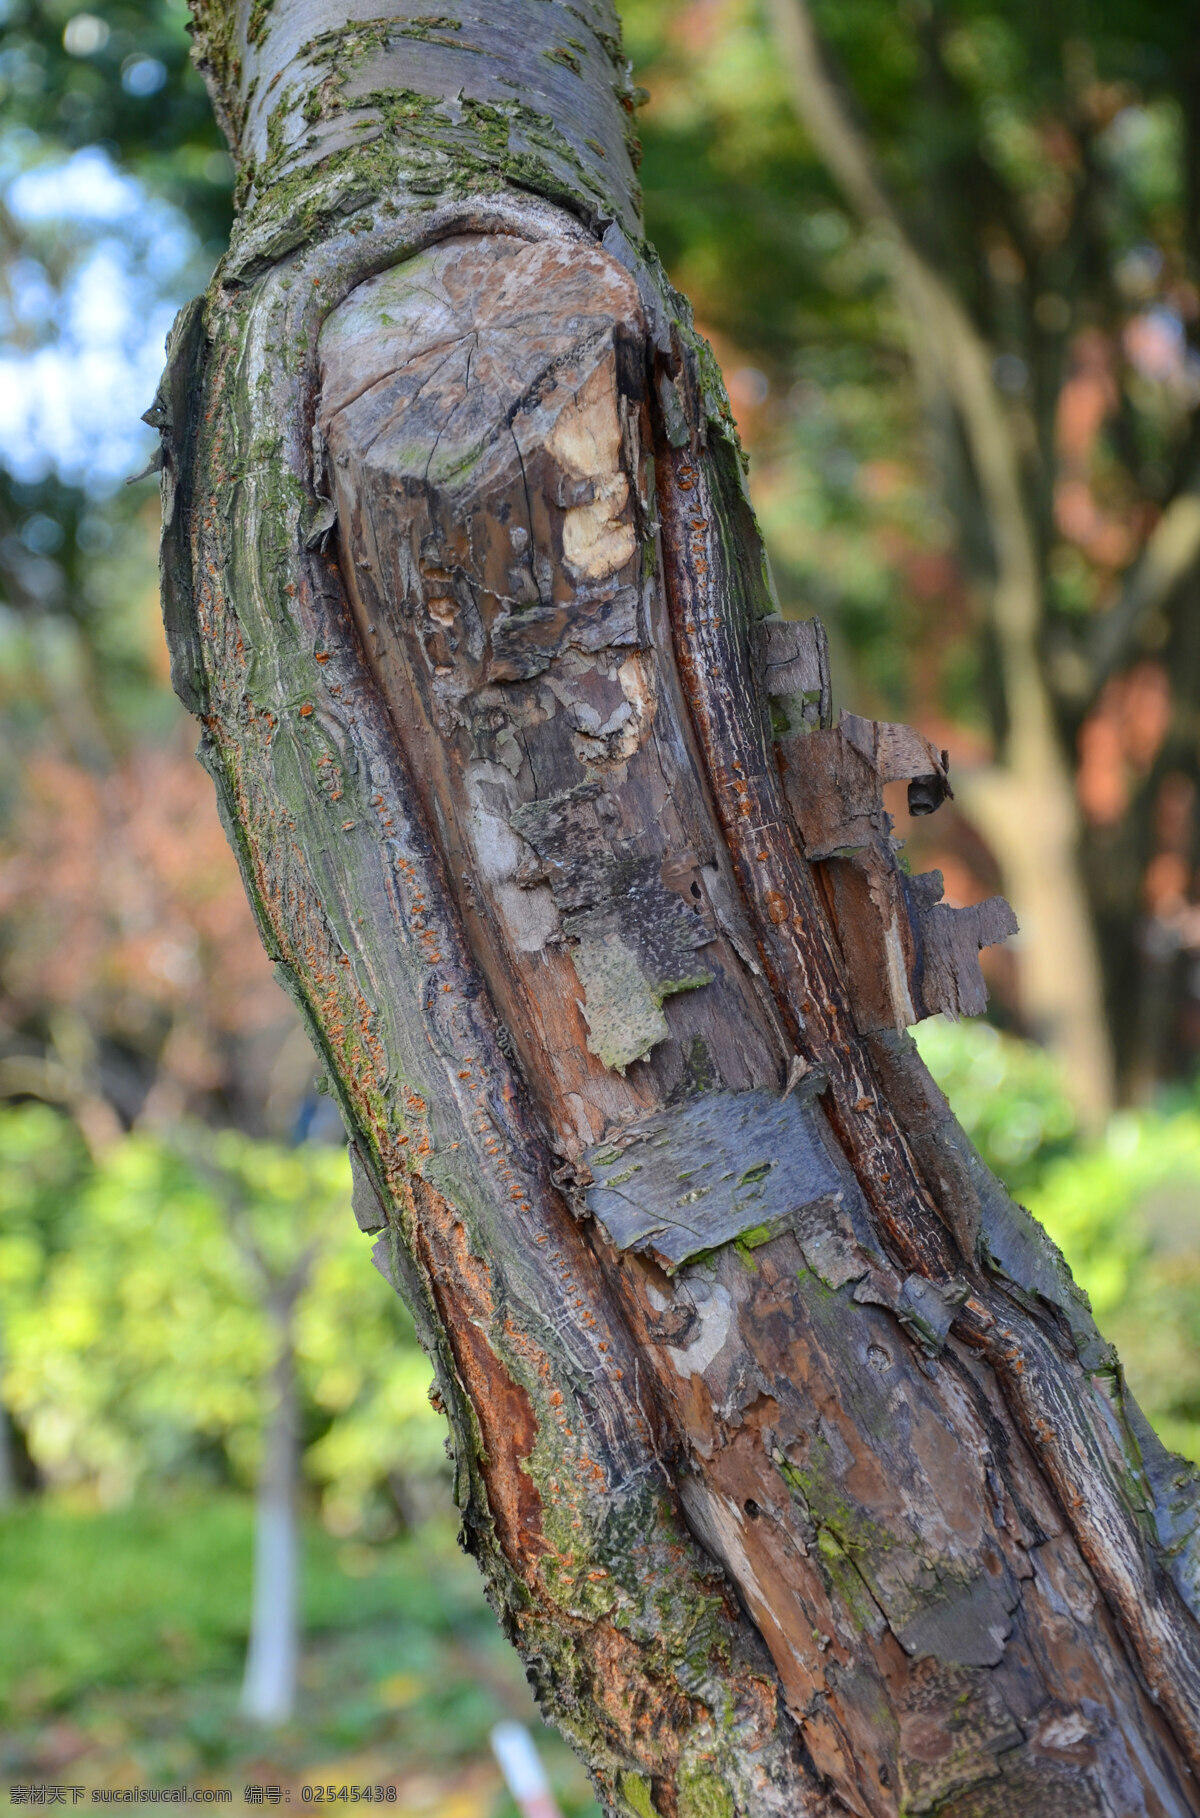 树木皮肤 斑驳肌理 岁月痕迹 切口伤疤 树干纹理 树干 生物世界 树木树叶